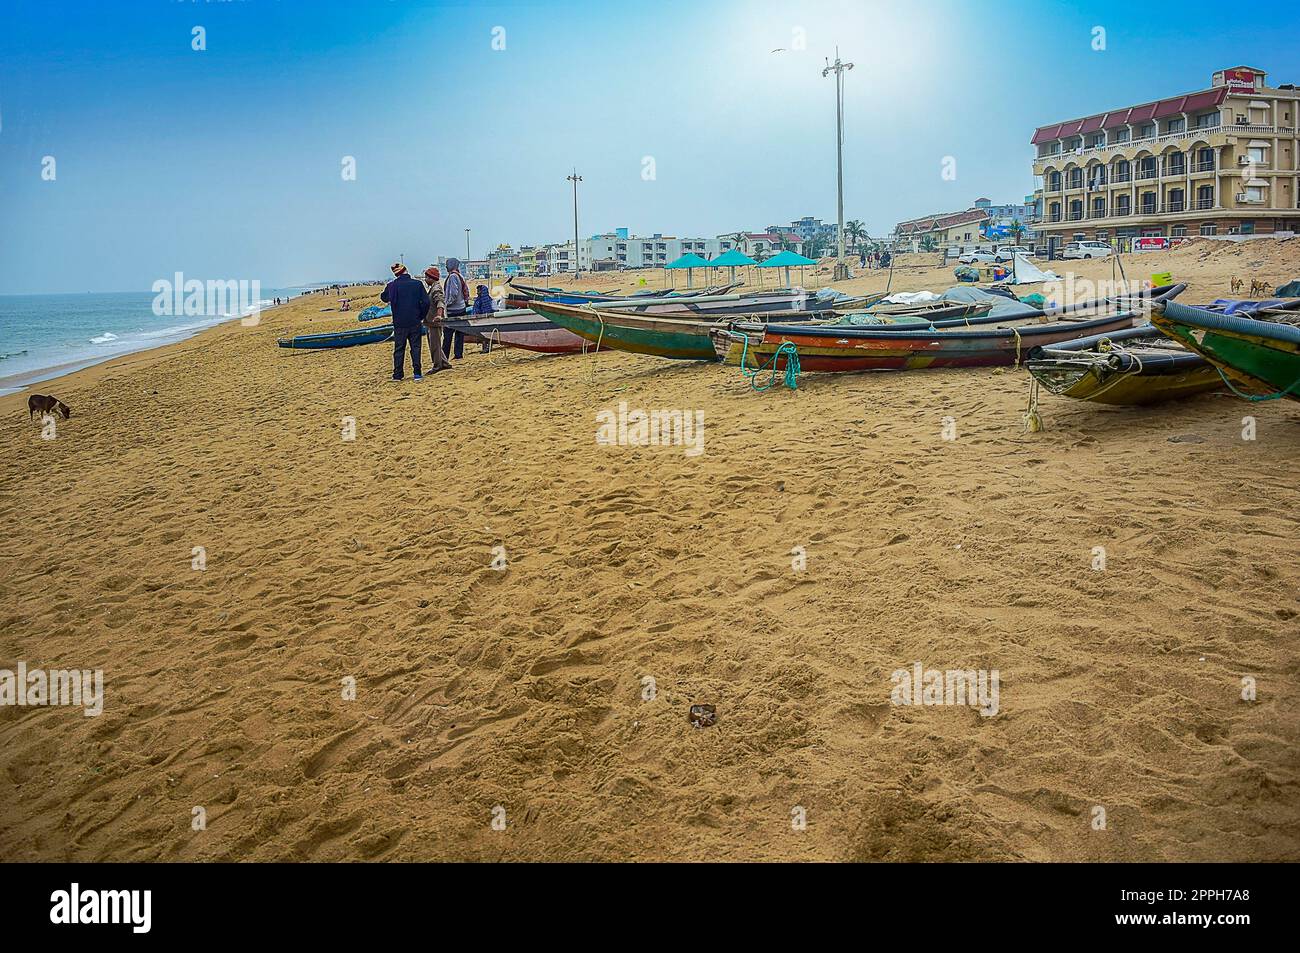 Bord de mer et plages autour de l'Inde Voyager et visiter OT PURI une vieille ville renound, station balnéaire dans la plage de la baie du Bengale, Odisa, Inde, très populaire dans l'est de l'Inde. FÉVRIER 2020. Banque D'Images